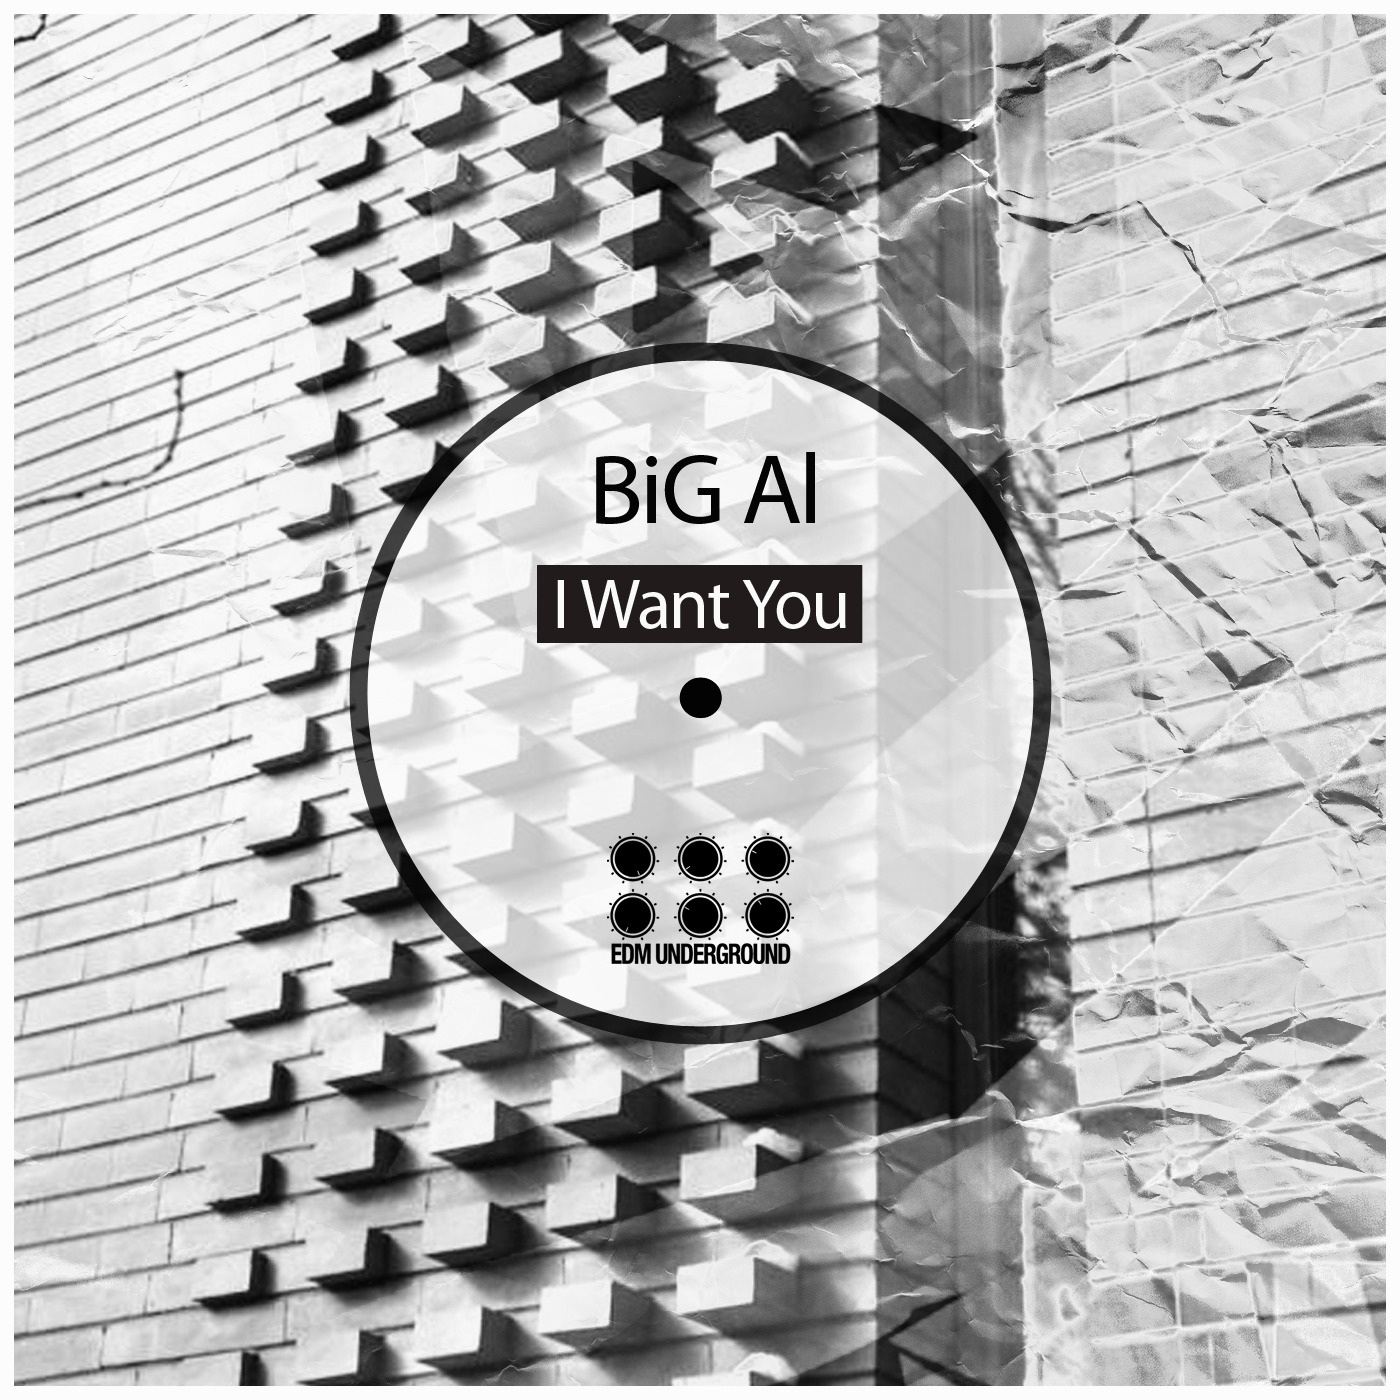 Big Al - I Want You / EDM Underground